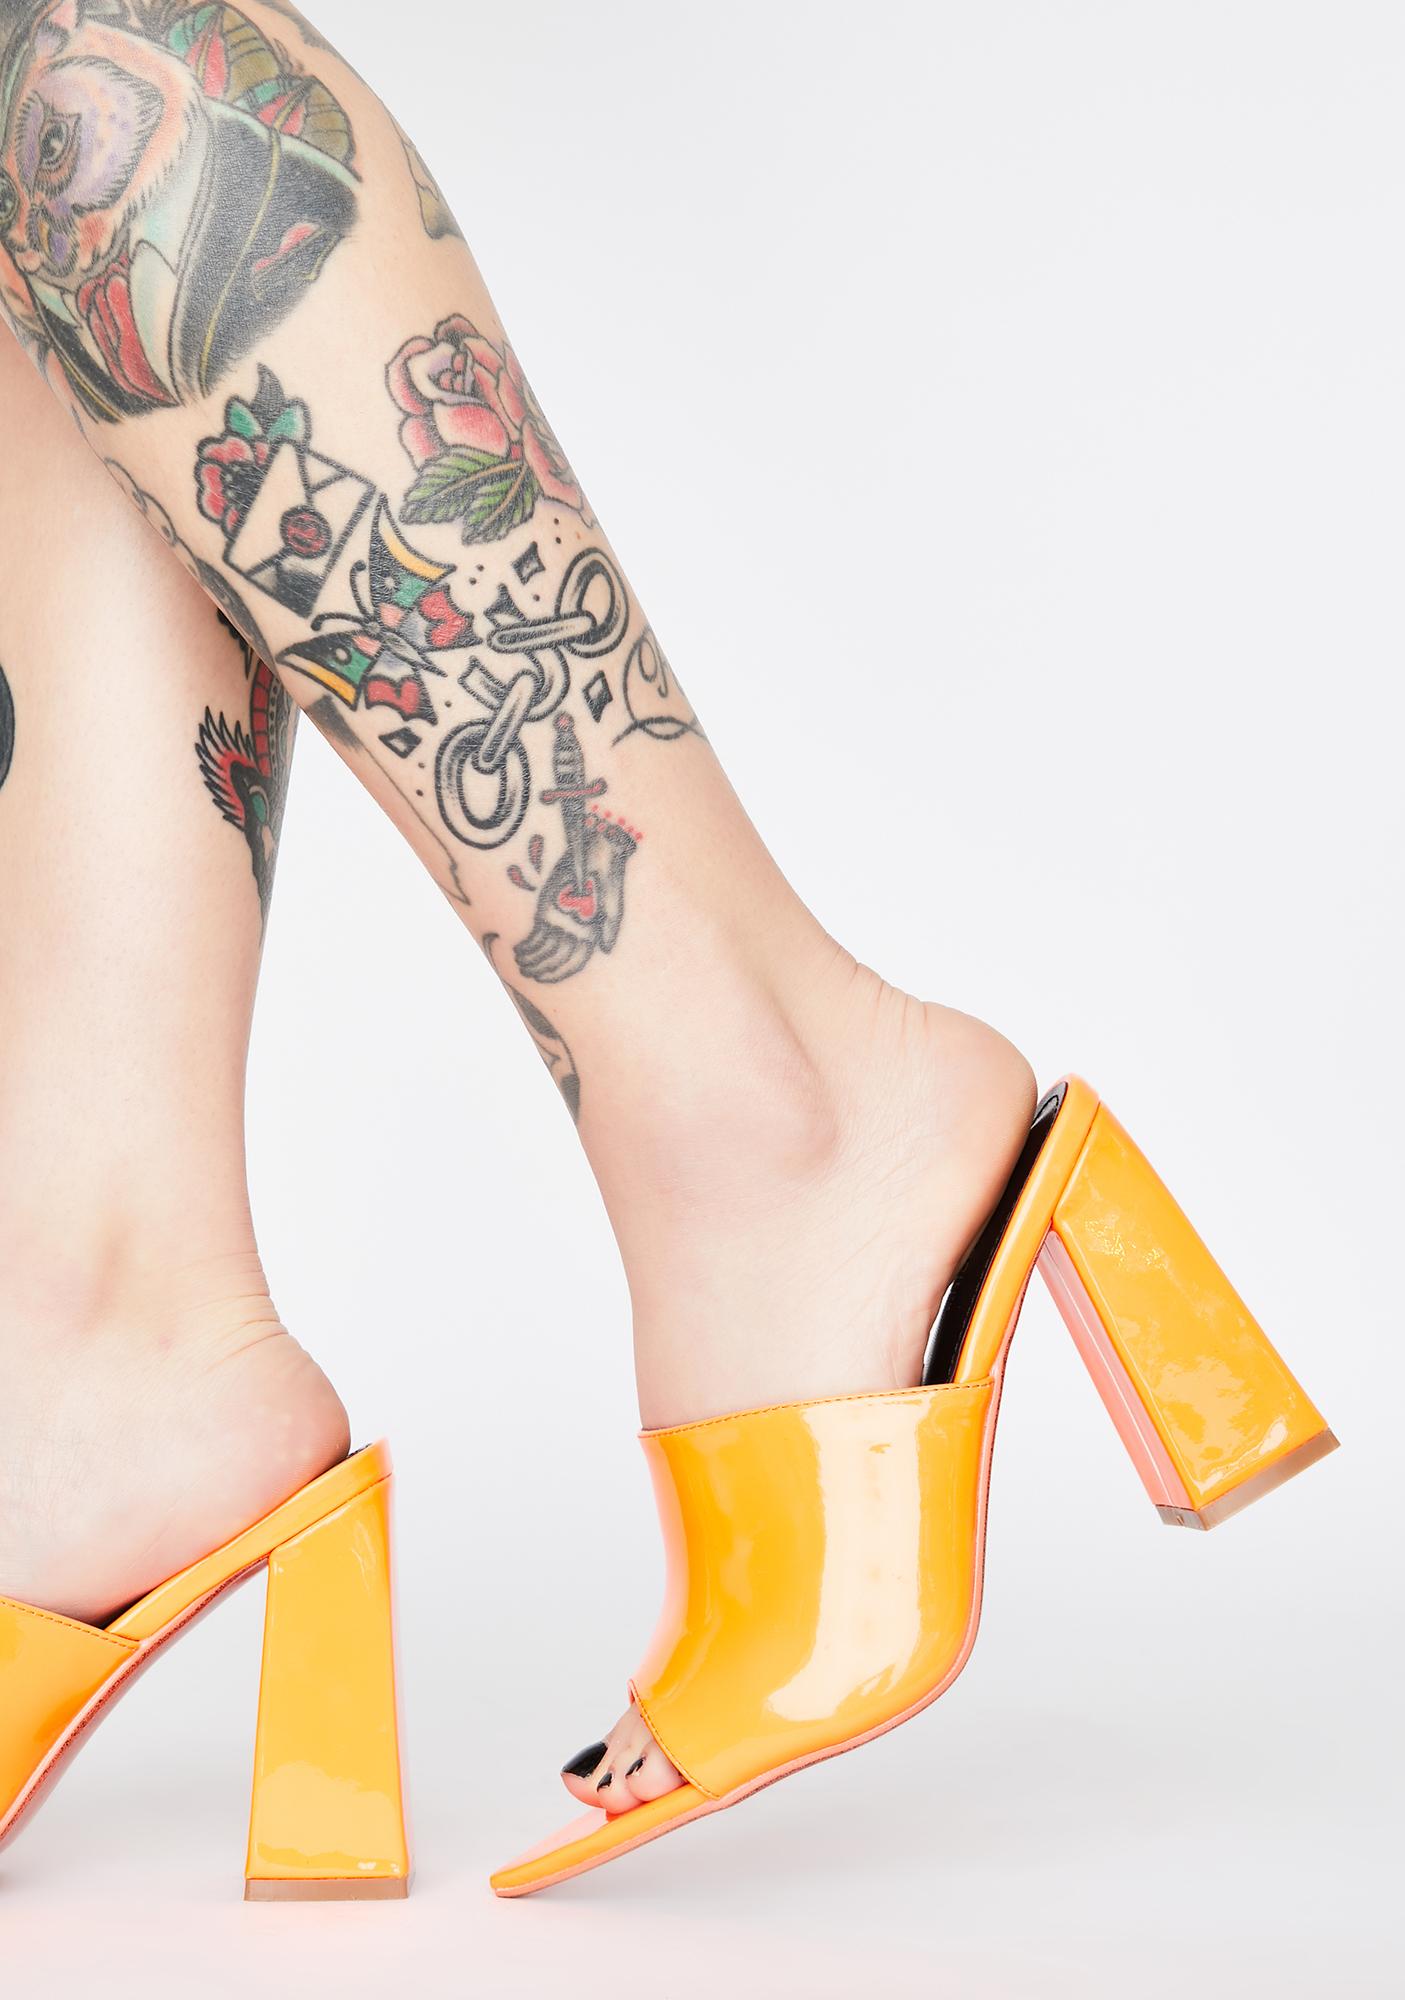 orange mules heels